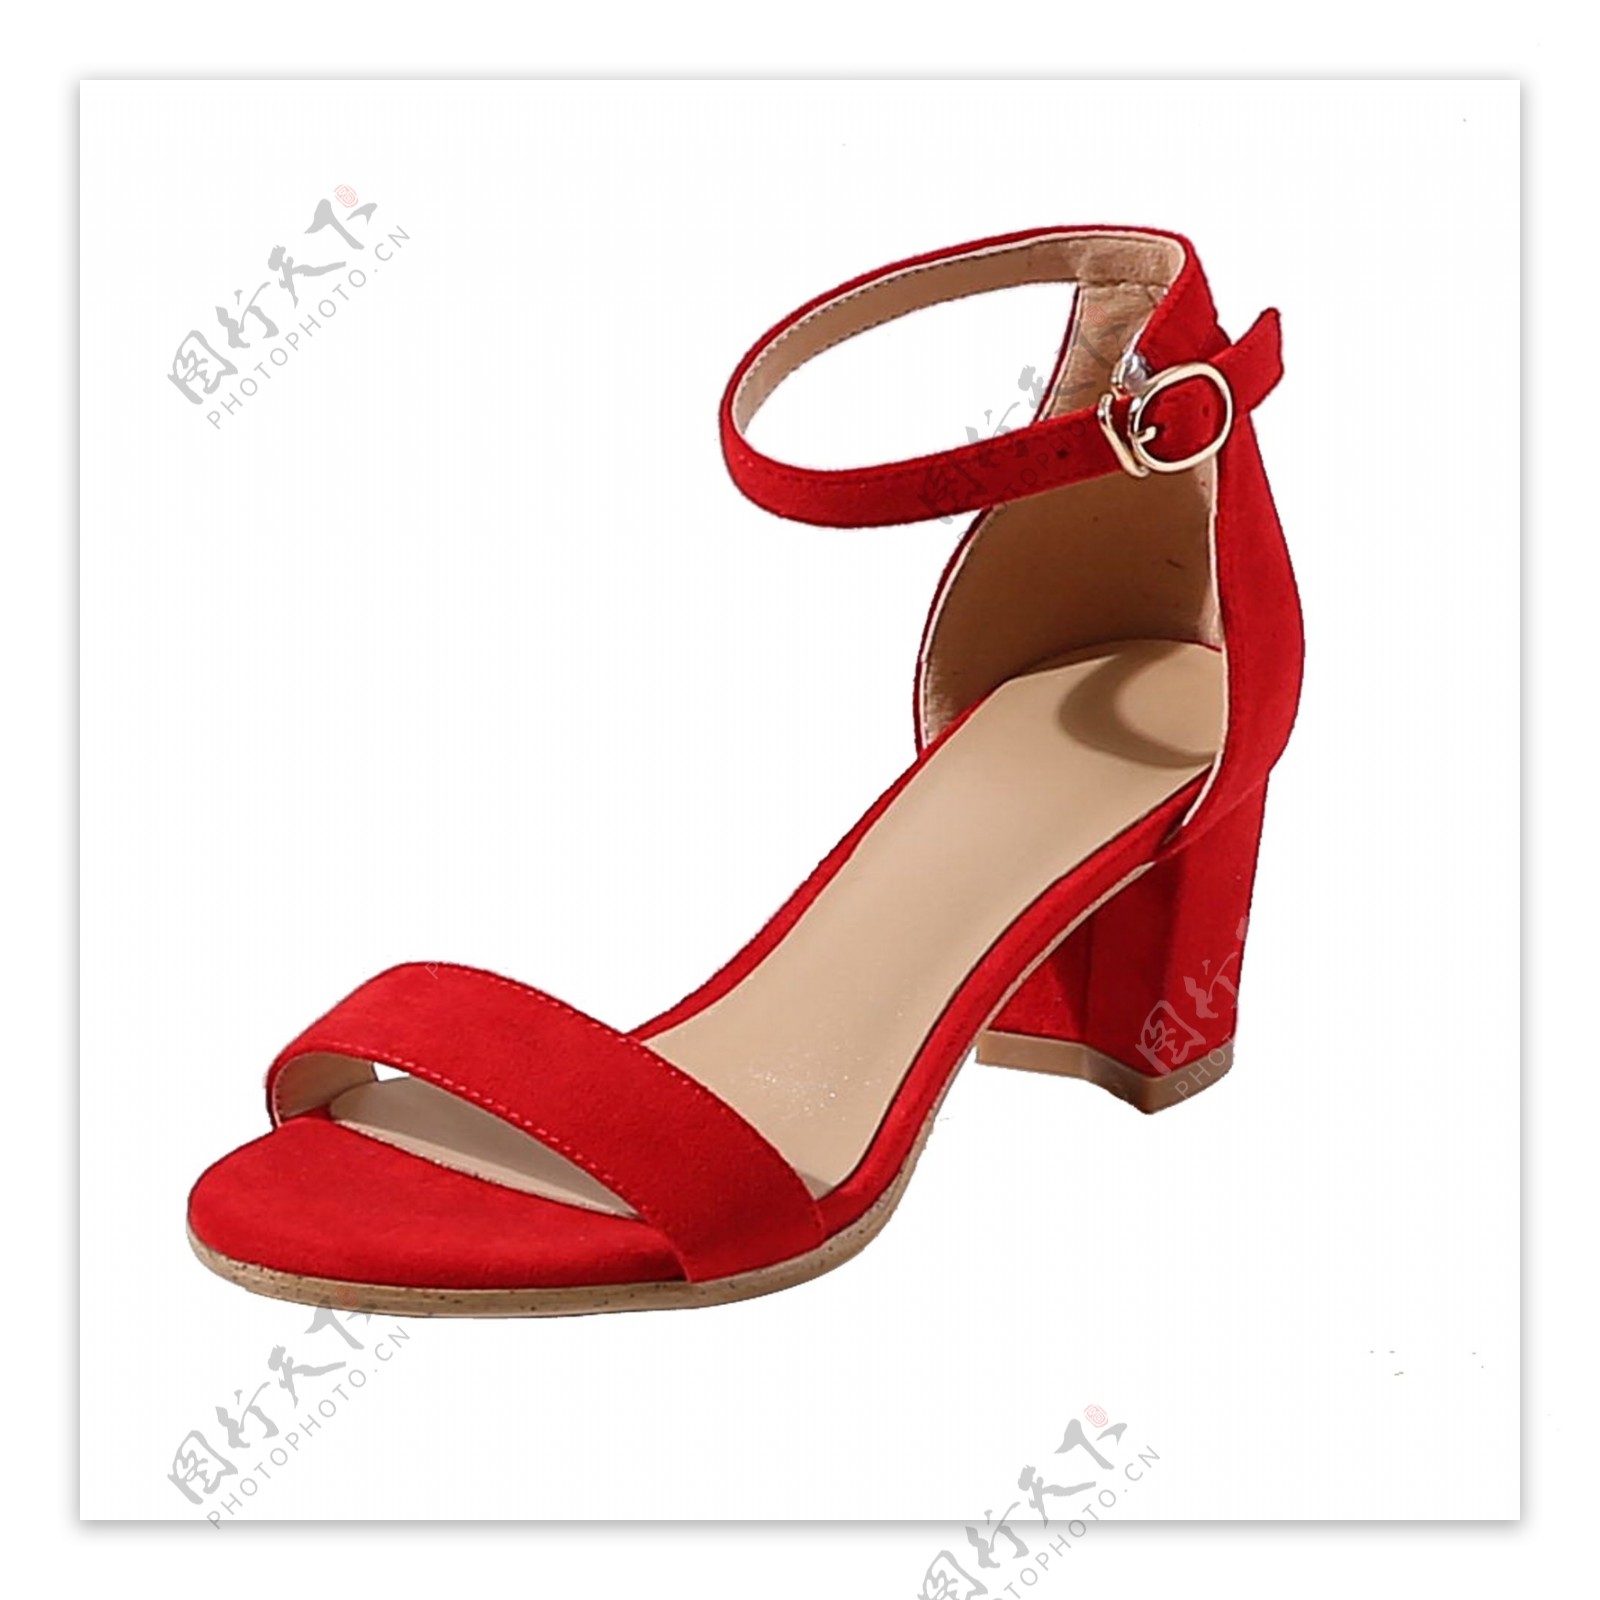 一只红色的女款鞋子